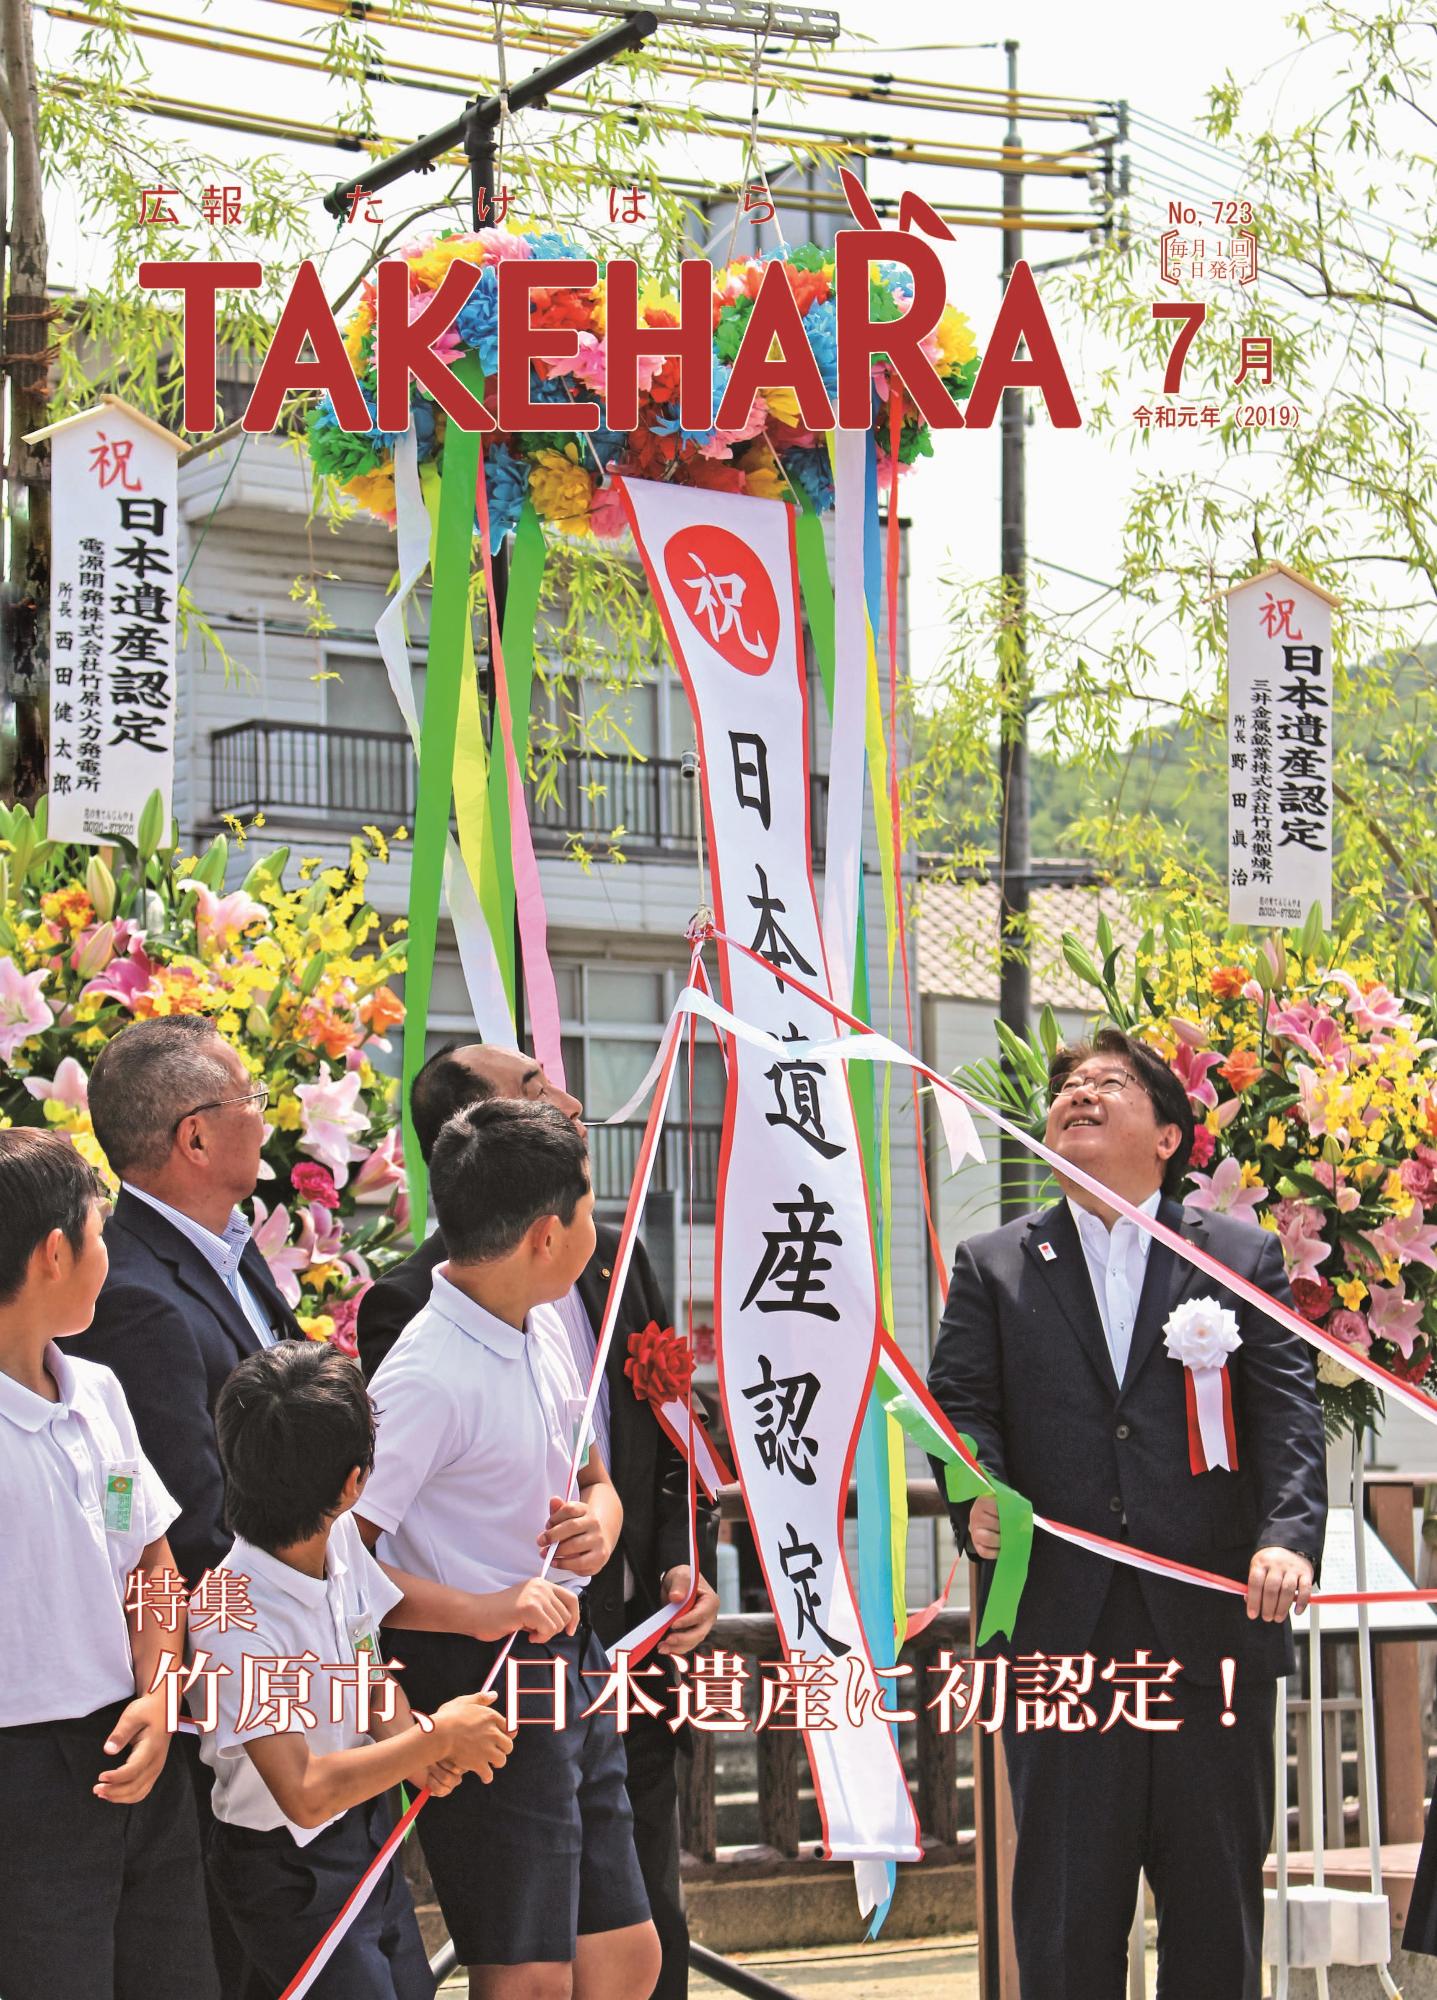 広報たけはら令和元年7月号「竹原市、日本遺産に初認定」